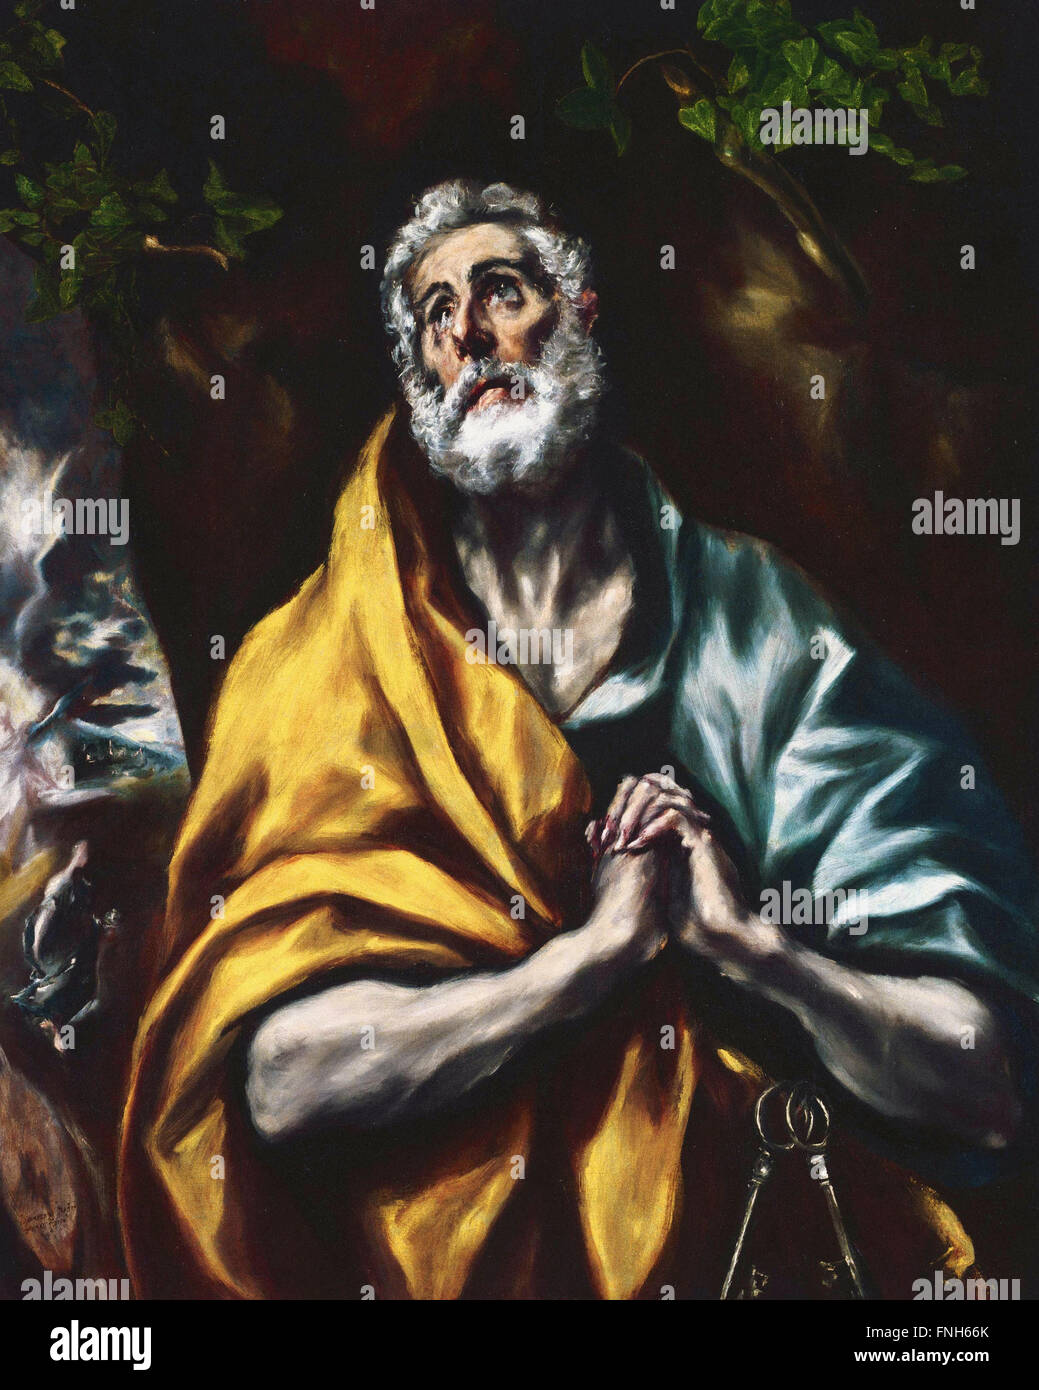 El Greco - El San Pedro arrepentido Foto de stock